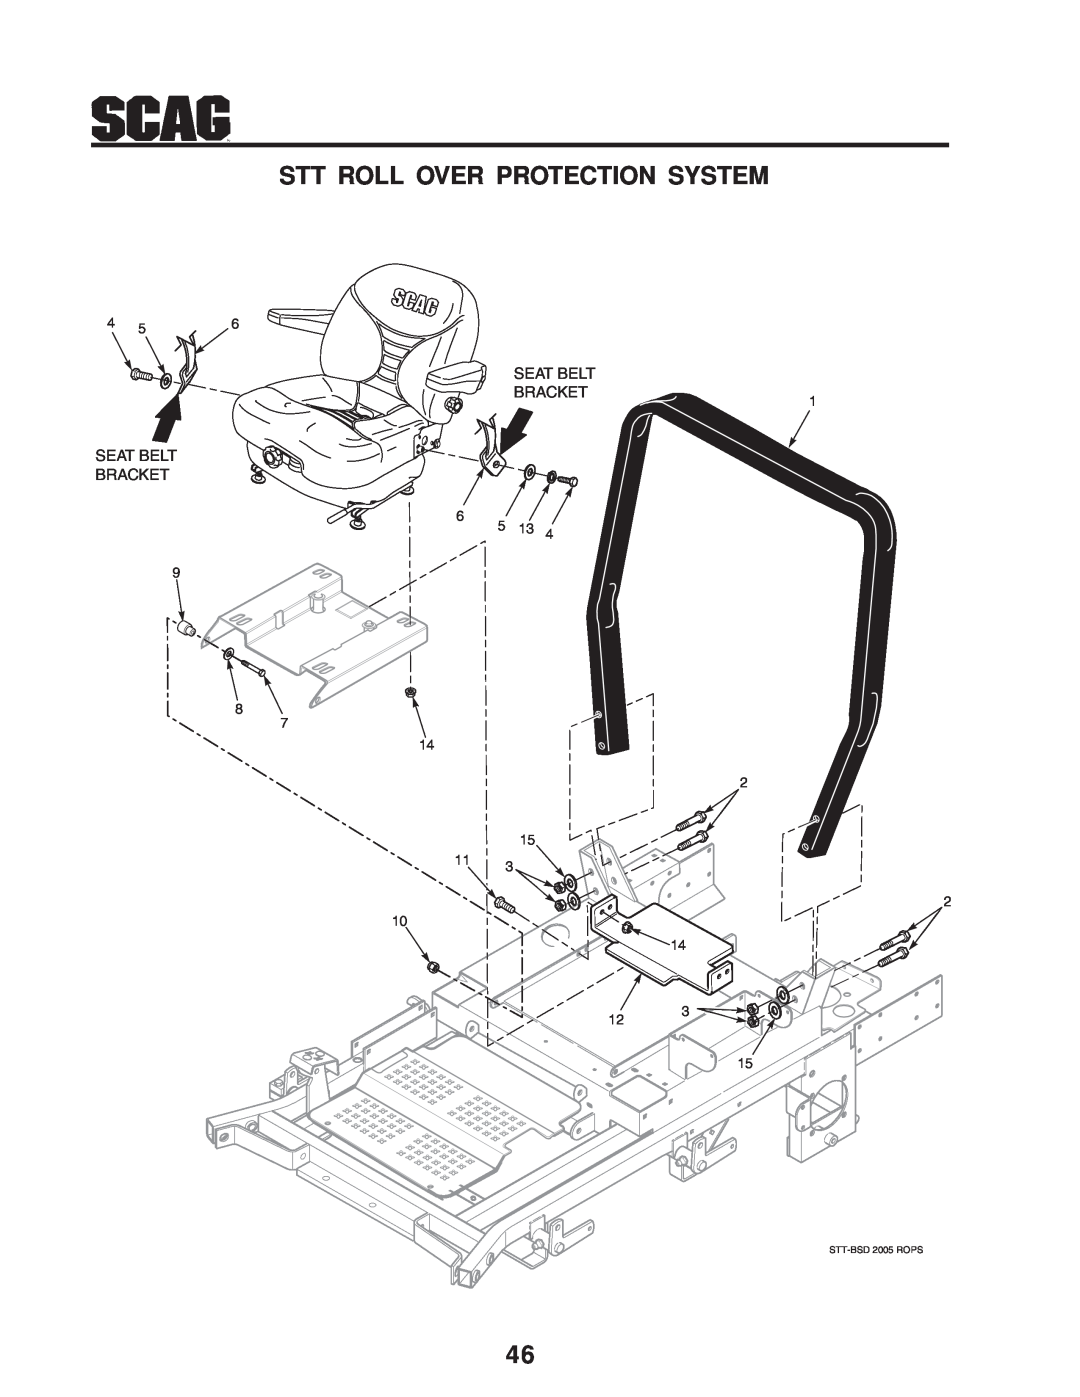 Scag Power Equipment STT-31BSD Stt Roll Over Protection System, Seat Belt Bracket Seat Belt Bracket, STT-BSD 2005 ROPS 